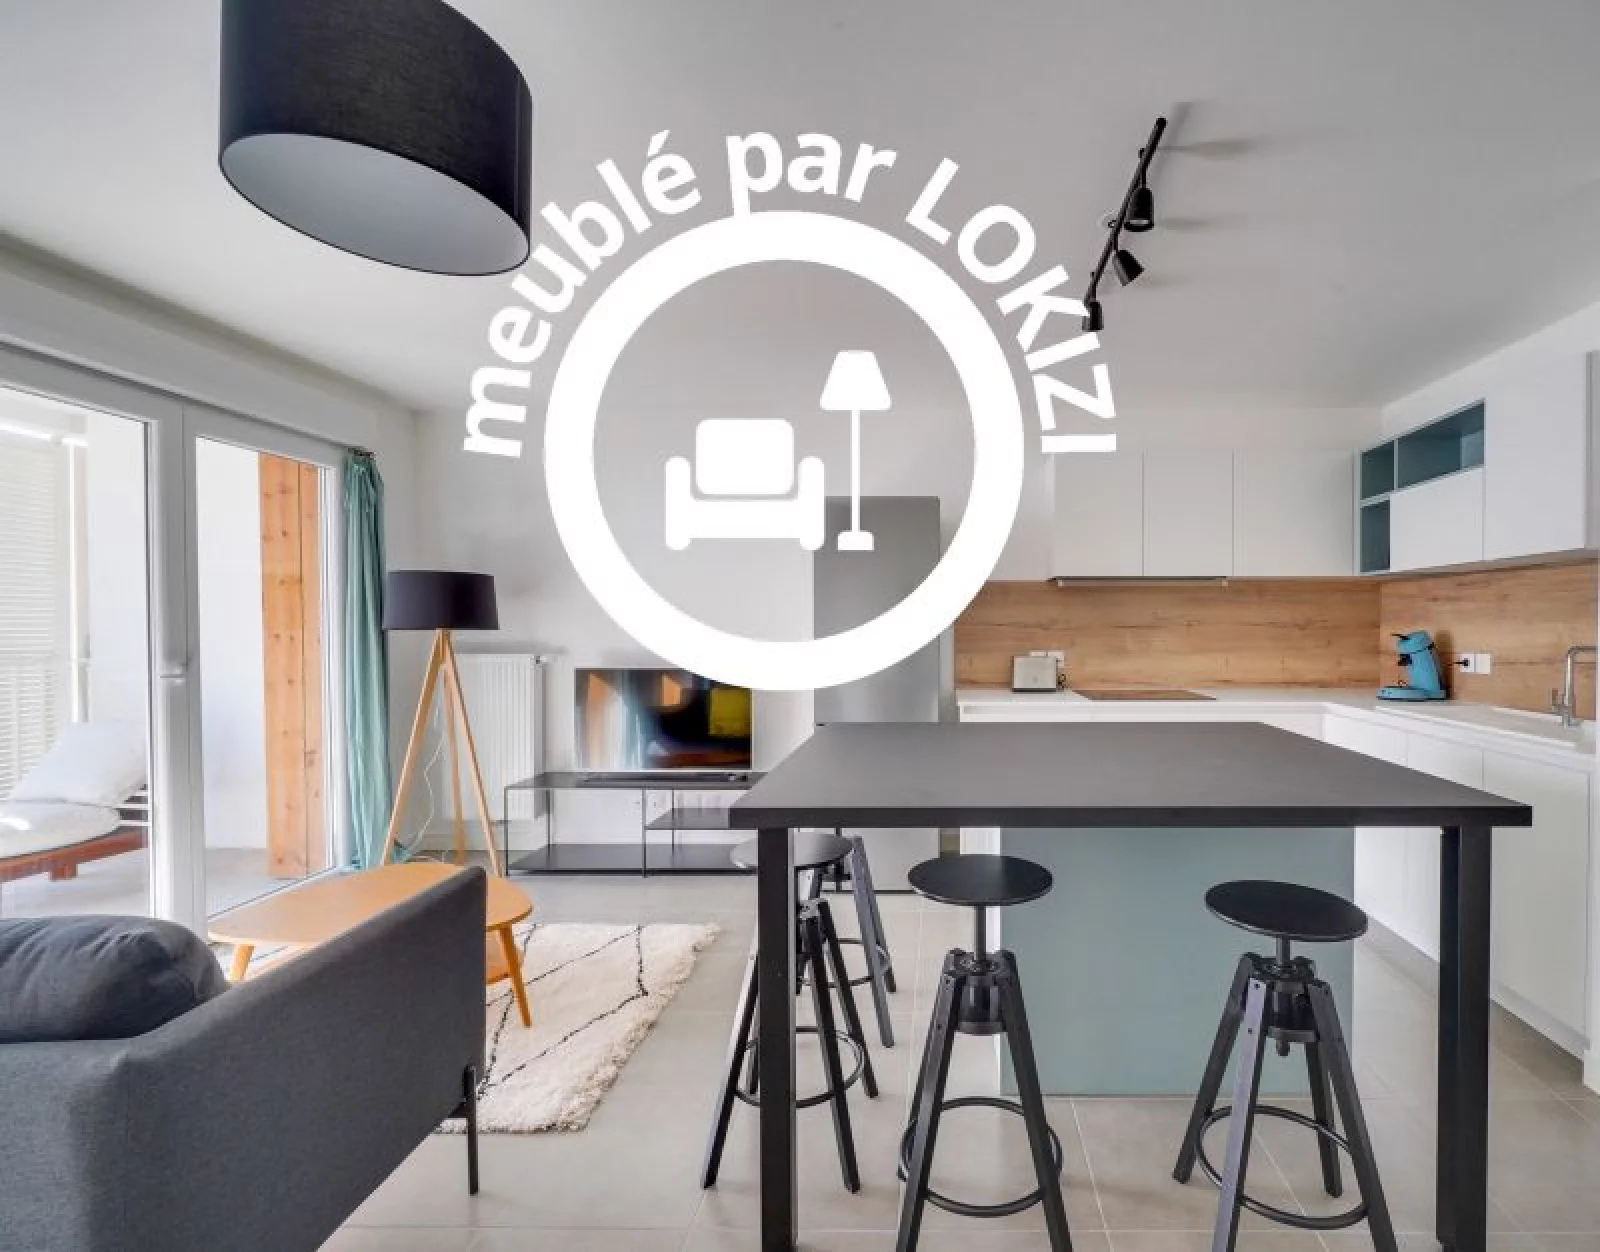 Location appartement meublé 3 pièces 67m² (Bordeaux - Bacalan)